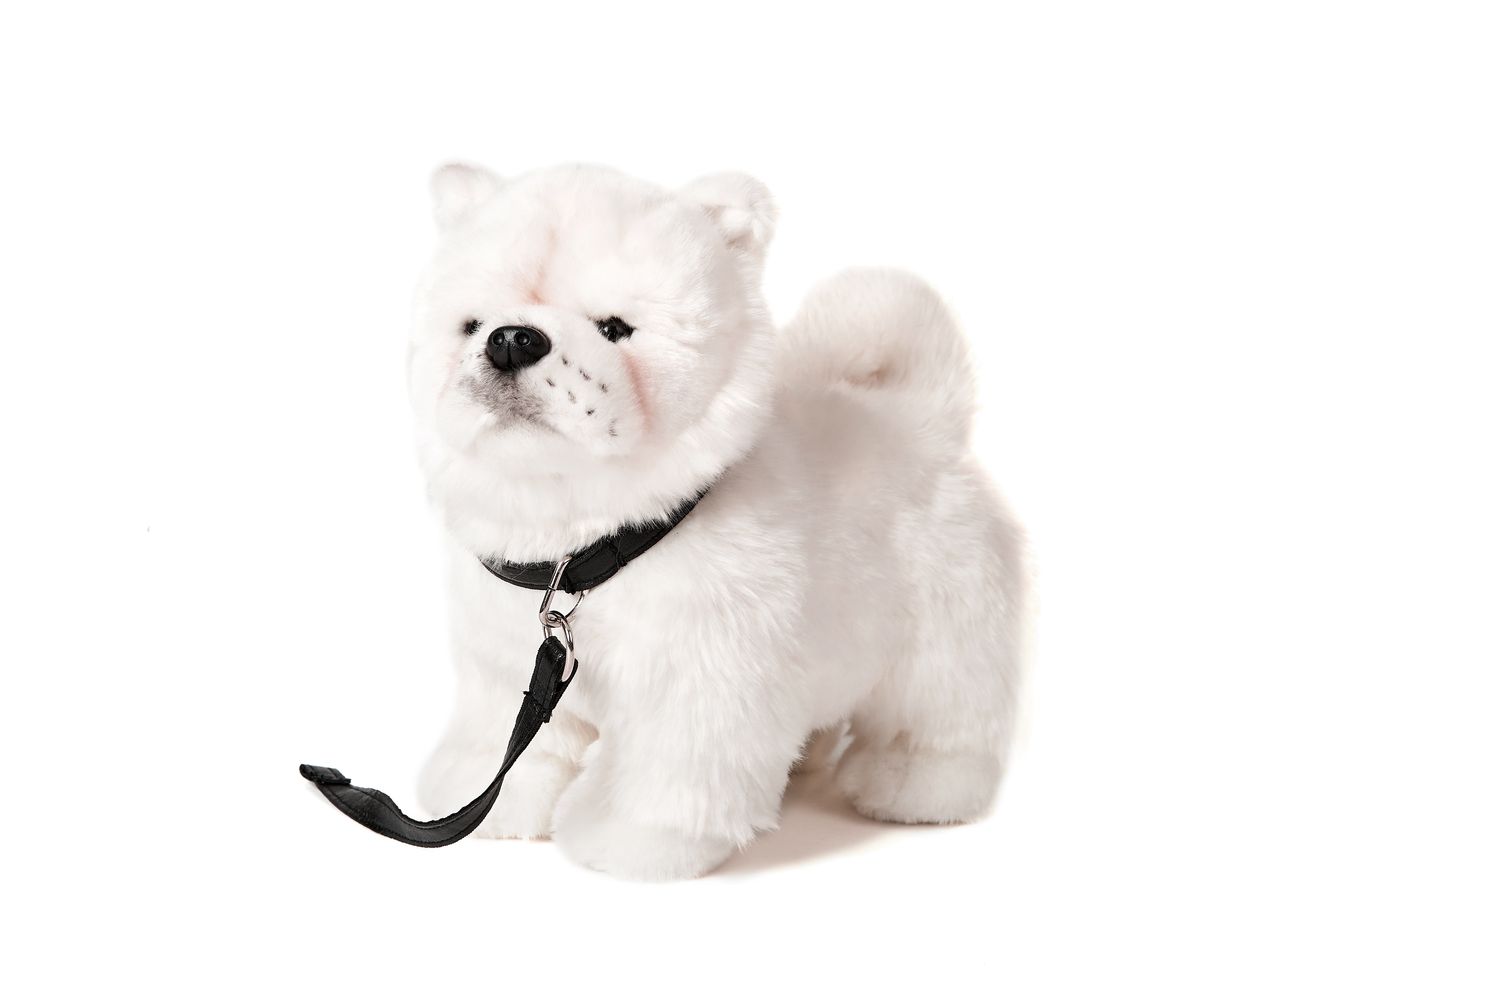 Chow Chow weiß, stehend, mit Leine - 24 cm (Höhe) - Plüsch-Hund, Haustier - Plüschtier, Kuscheltier